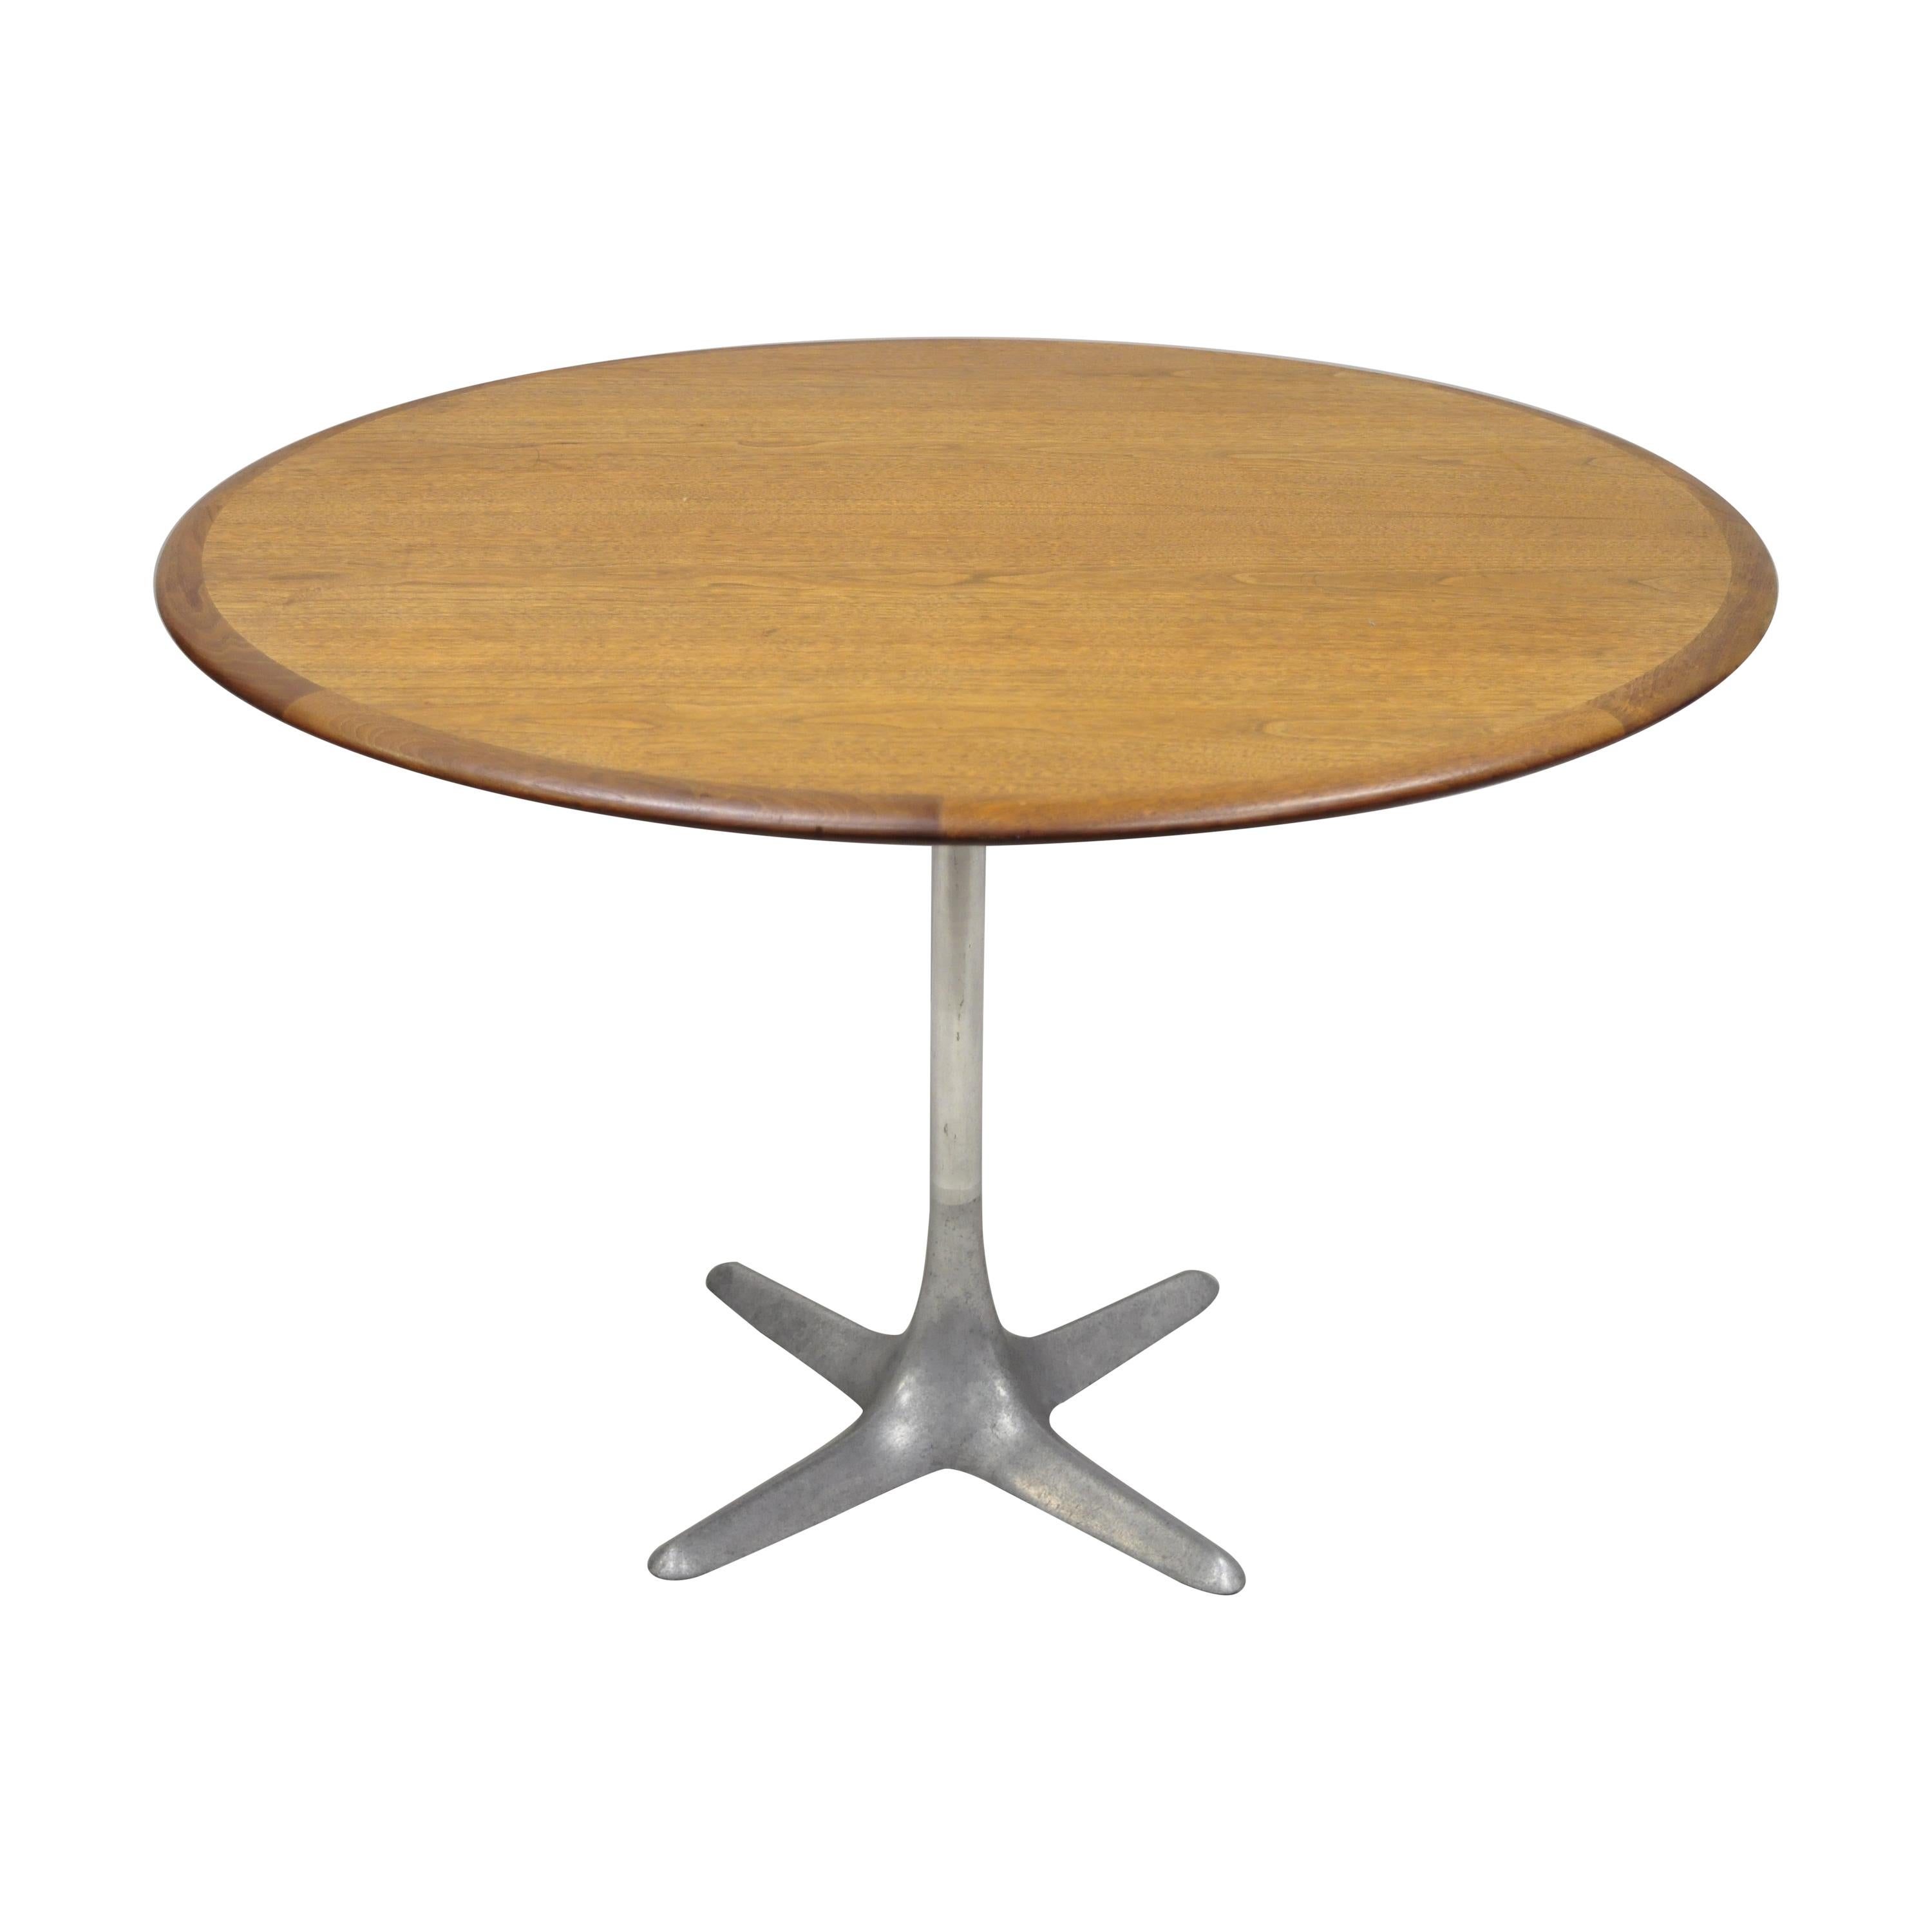 Midcentury Danish Modern Moreddi Andersen Walnut Dining Table Propeller Base